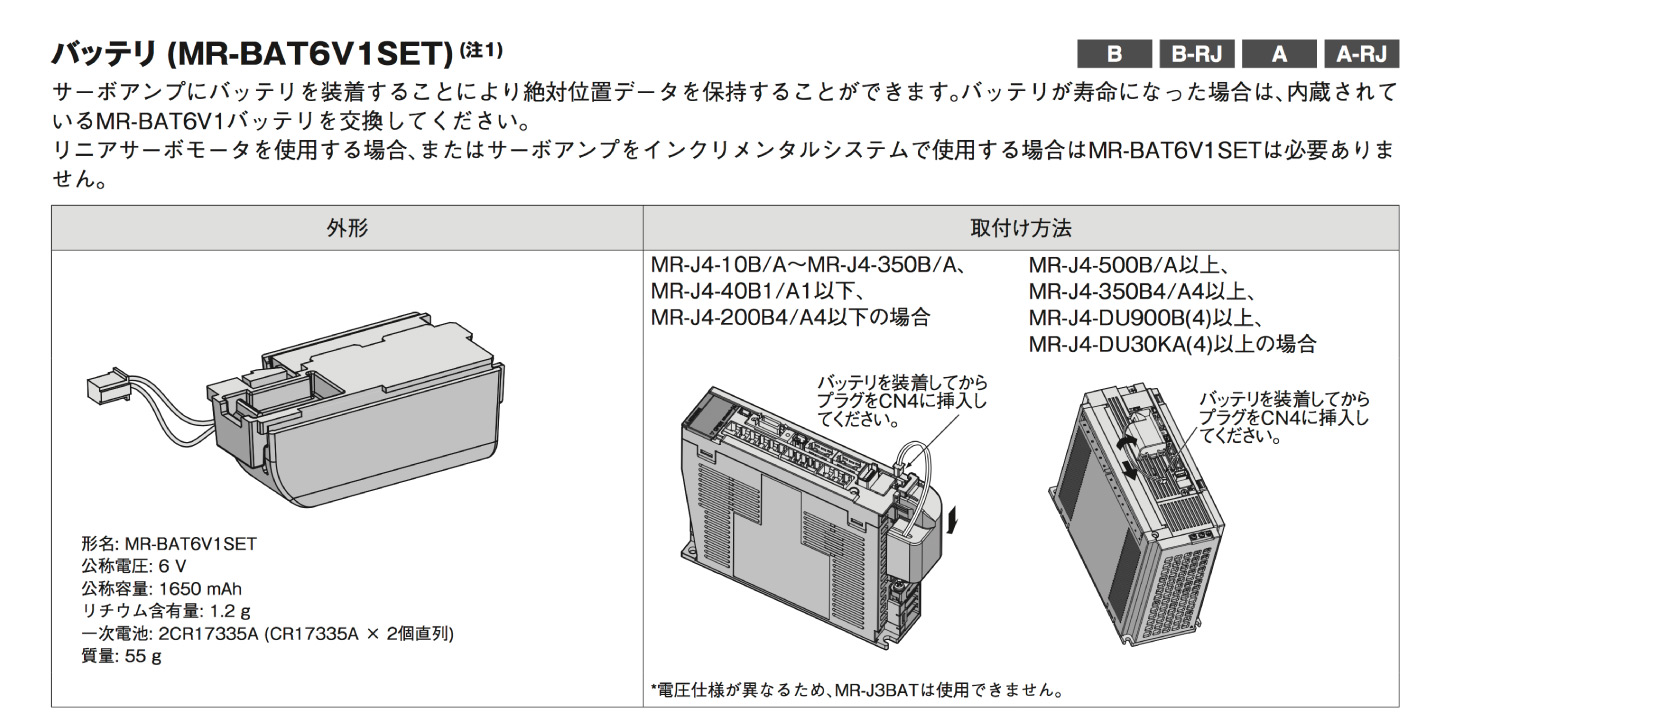 格安即決 31-2 国内正規品 新品未使用 MITSUBISHI 三菱電機 サーボアンプ MR-Jシリーズ MR-J4-40B 国内発送 